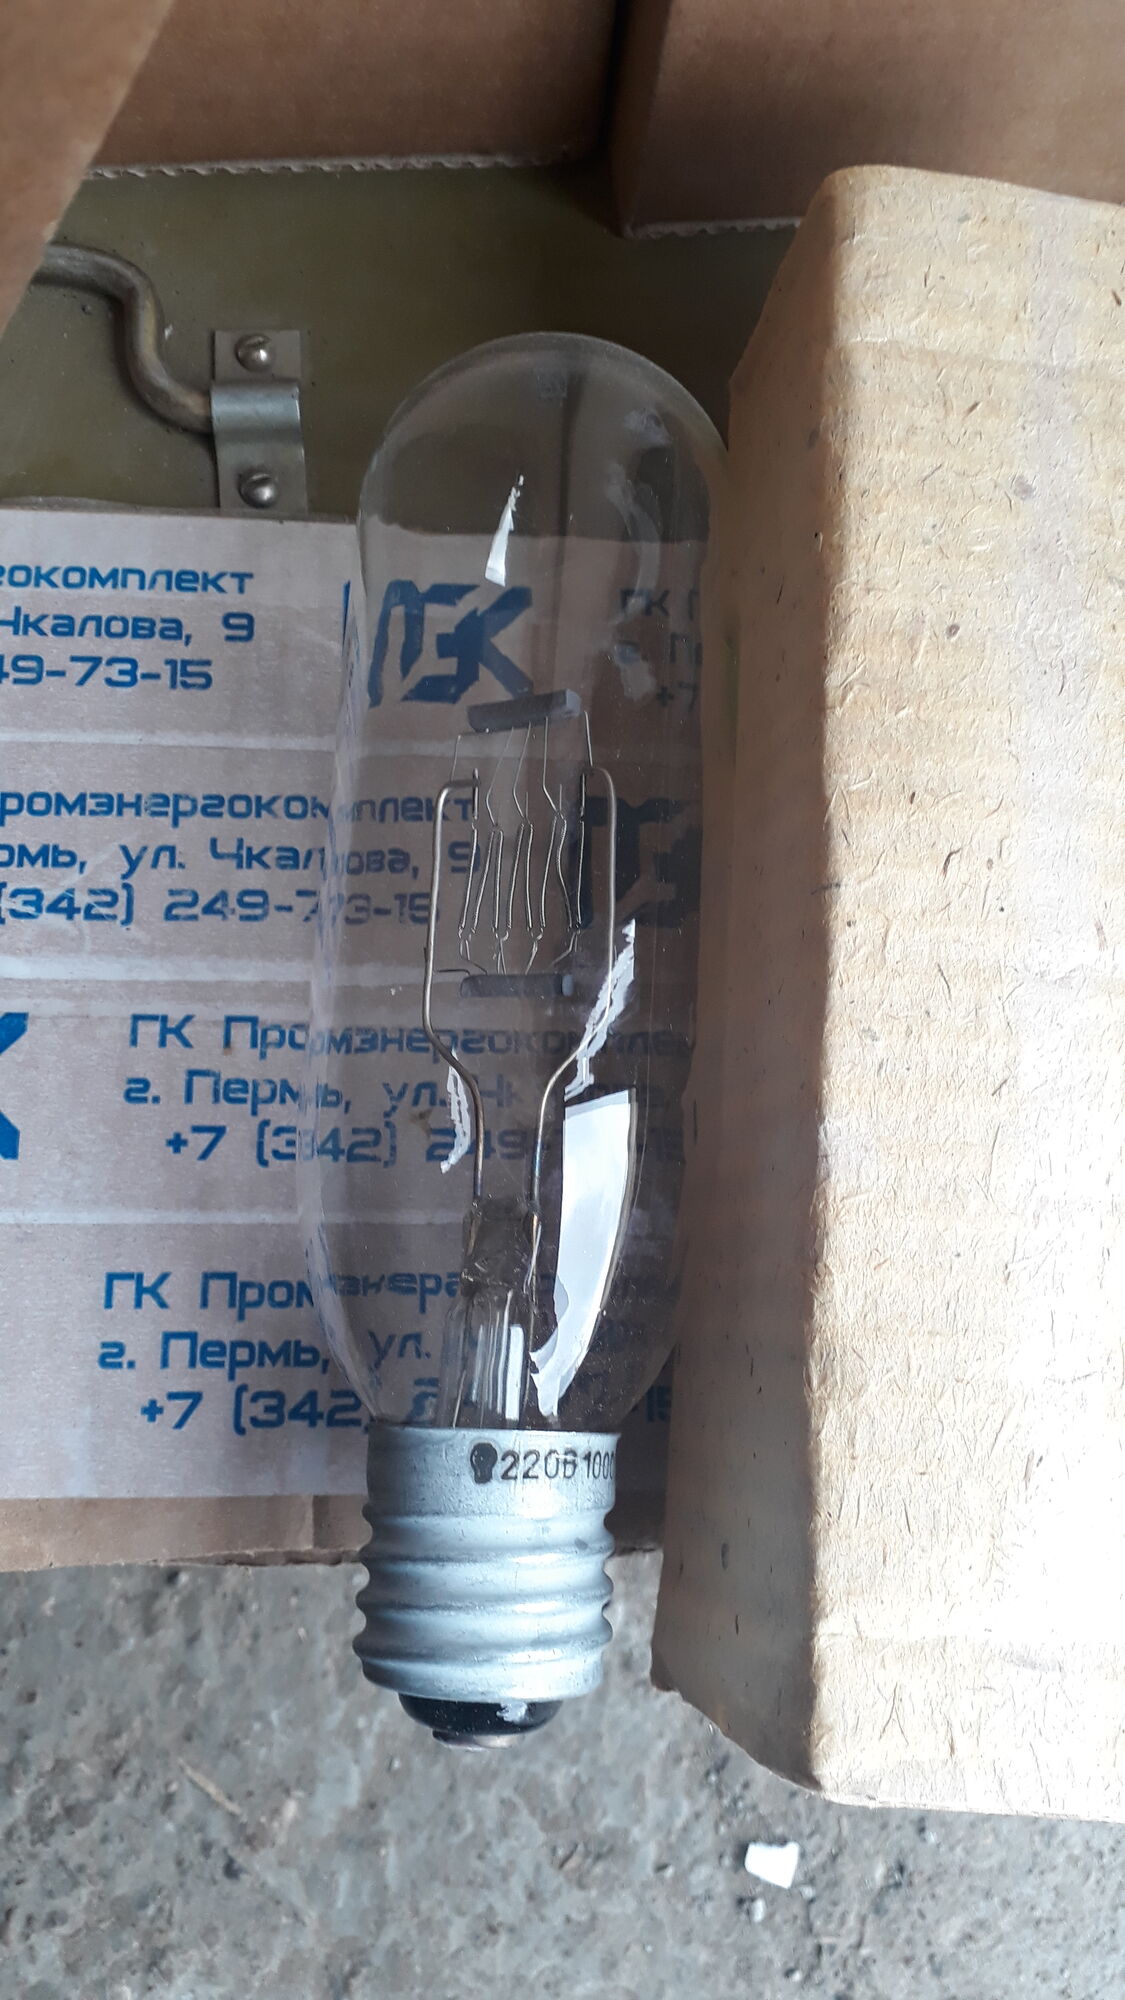 Лампа ПЖ 220-1000 Е40